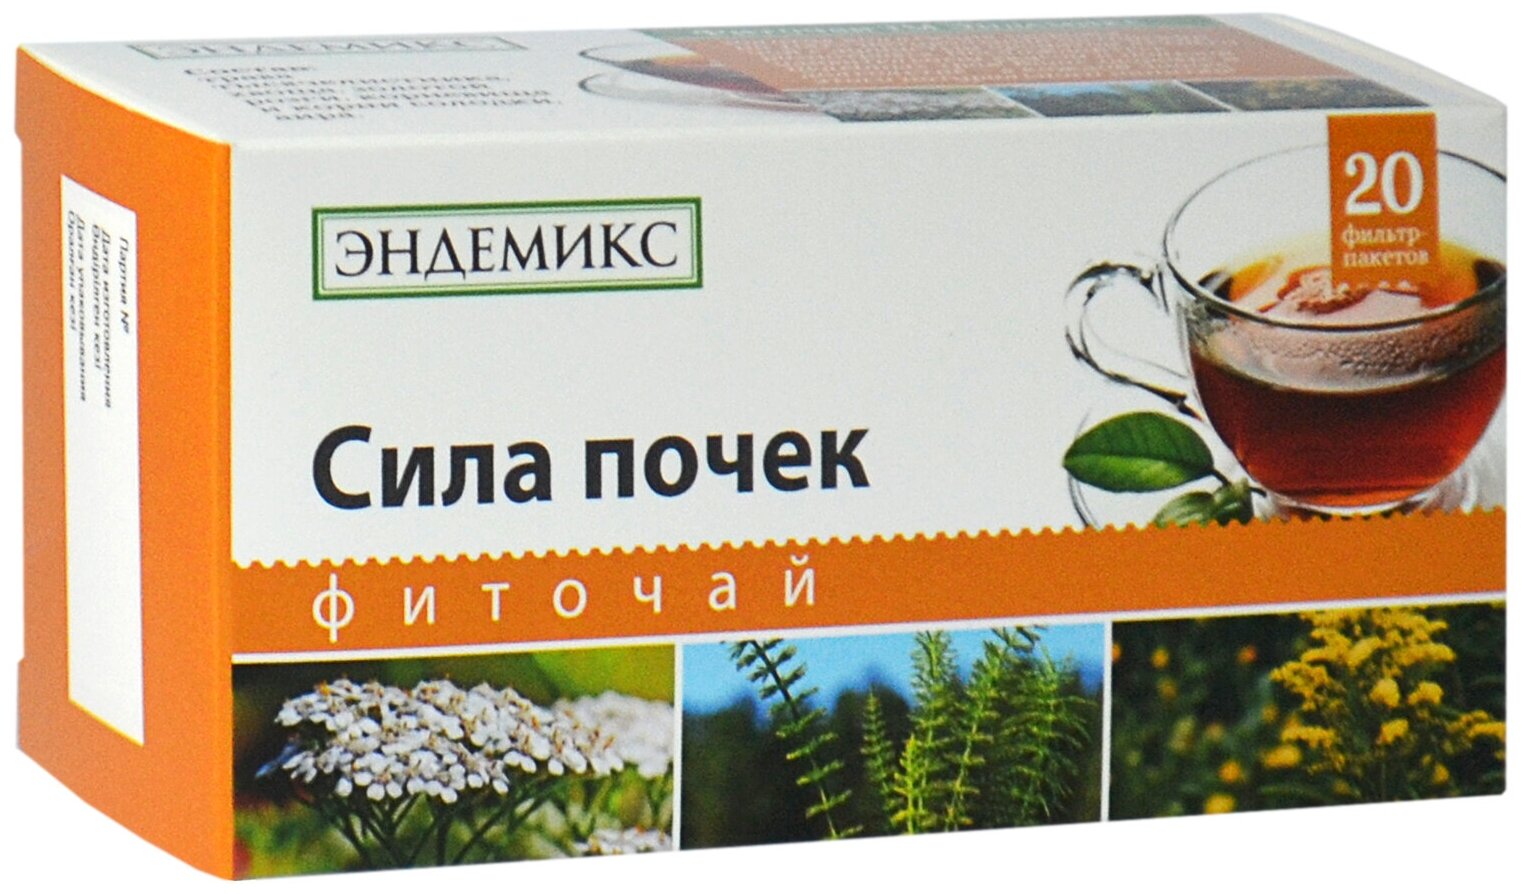 Травяной чай Эндемикс в пакетиках почечный, противовоспалительный, мочегонный для почек и мочеполовой системы,детокс, 20 шт. - фотография № 1